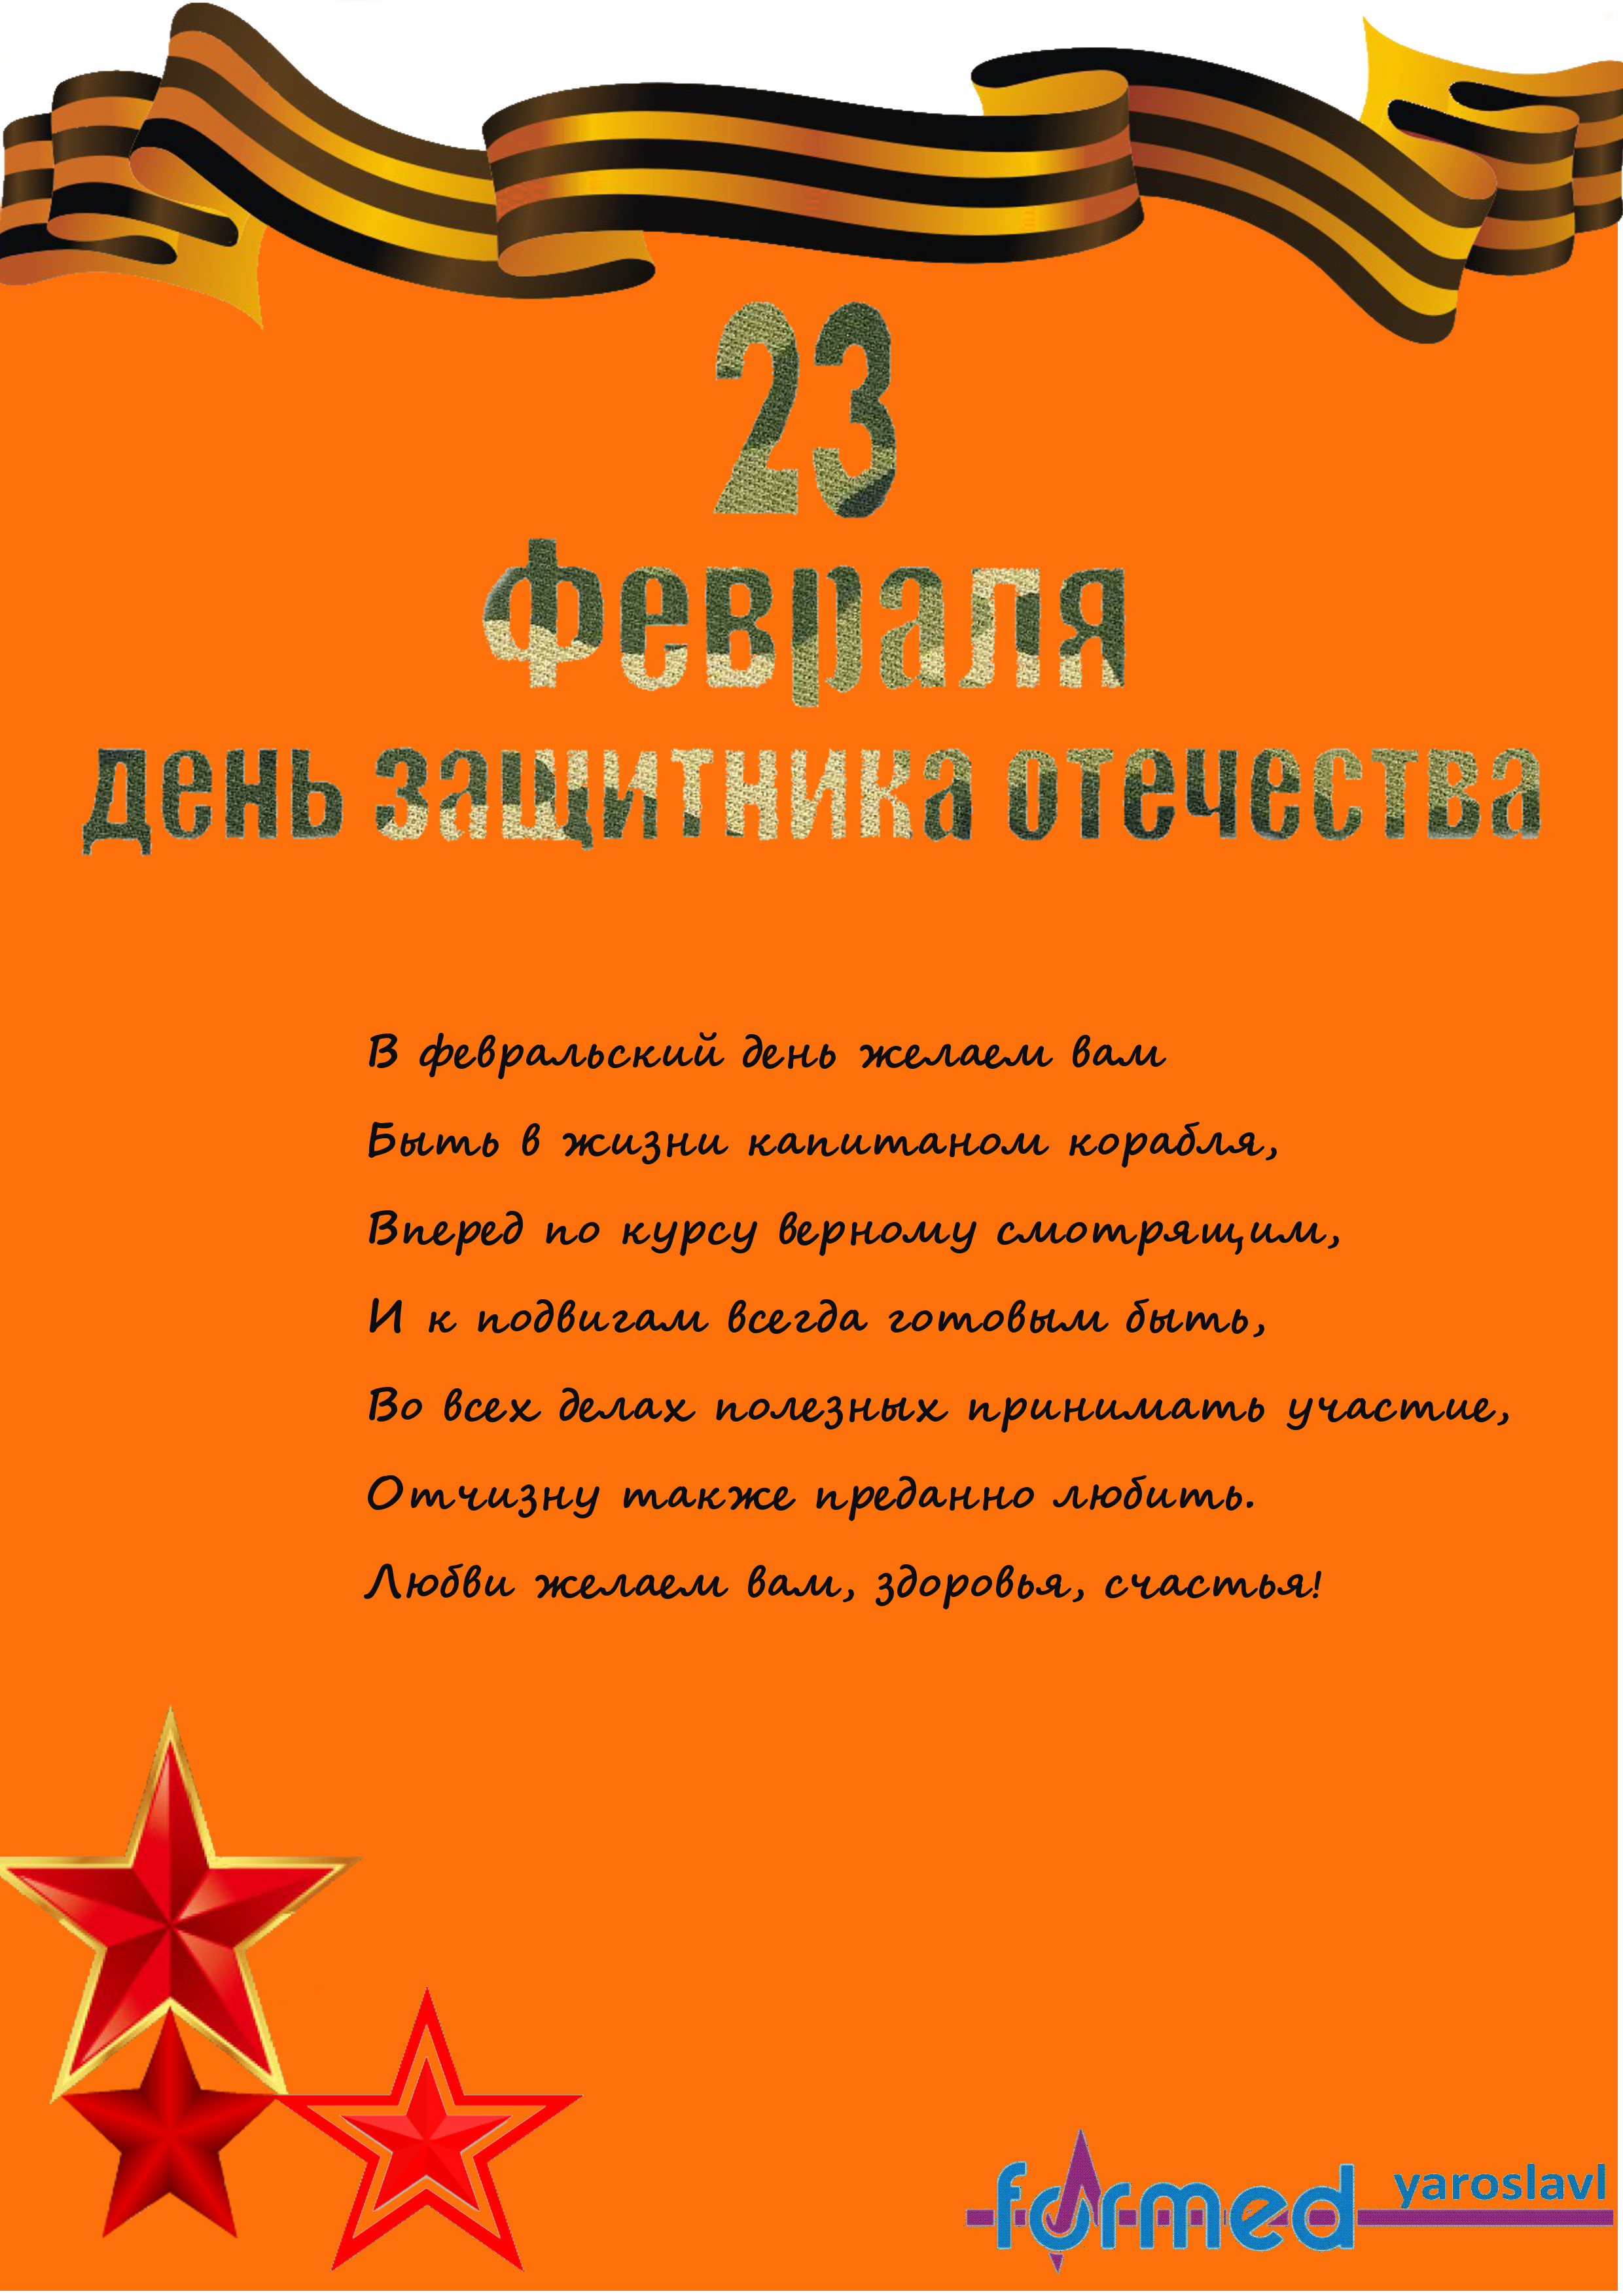 ООО "Формед-Ярославль" поздравляет с Днем защитника Отечества